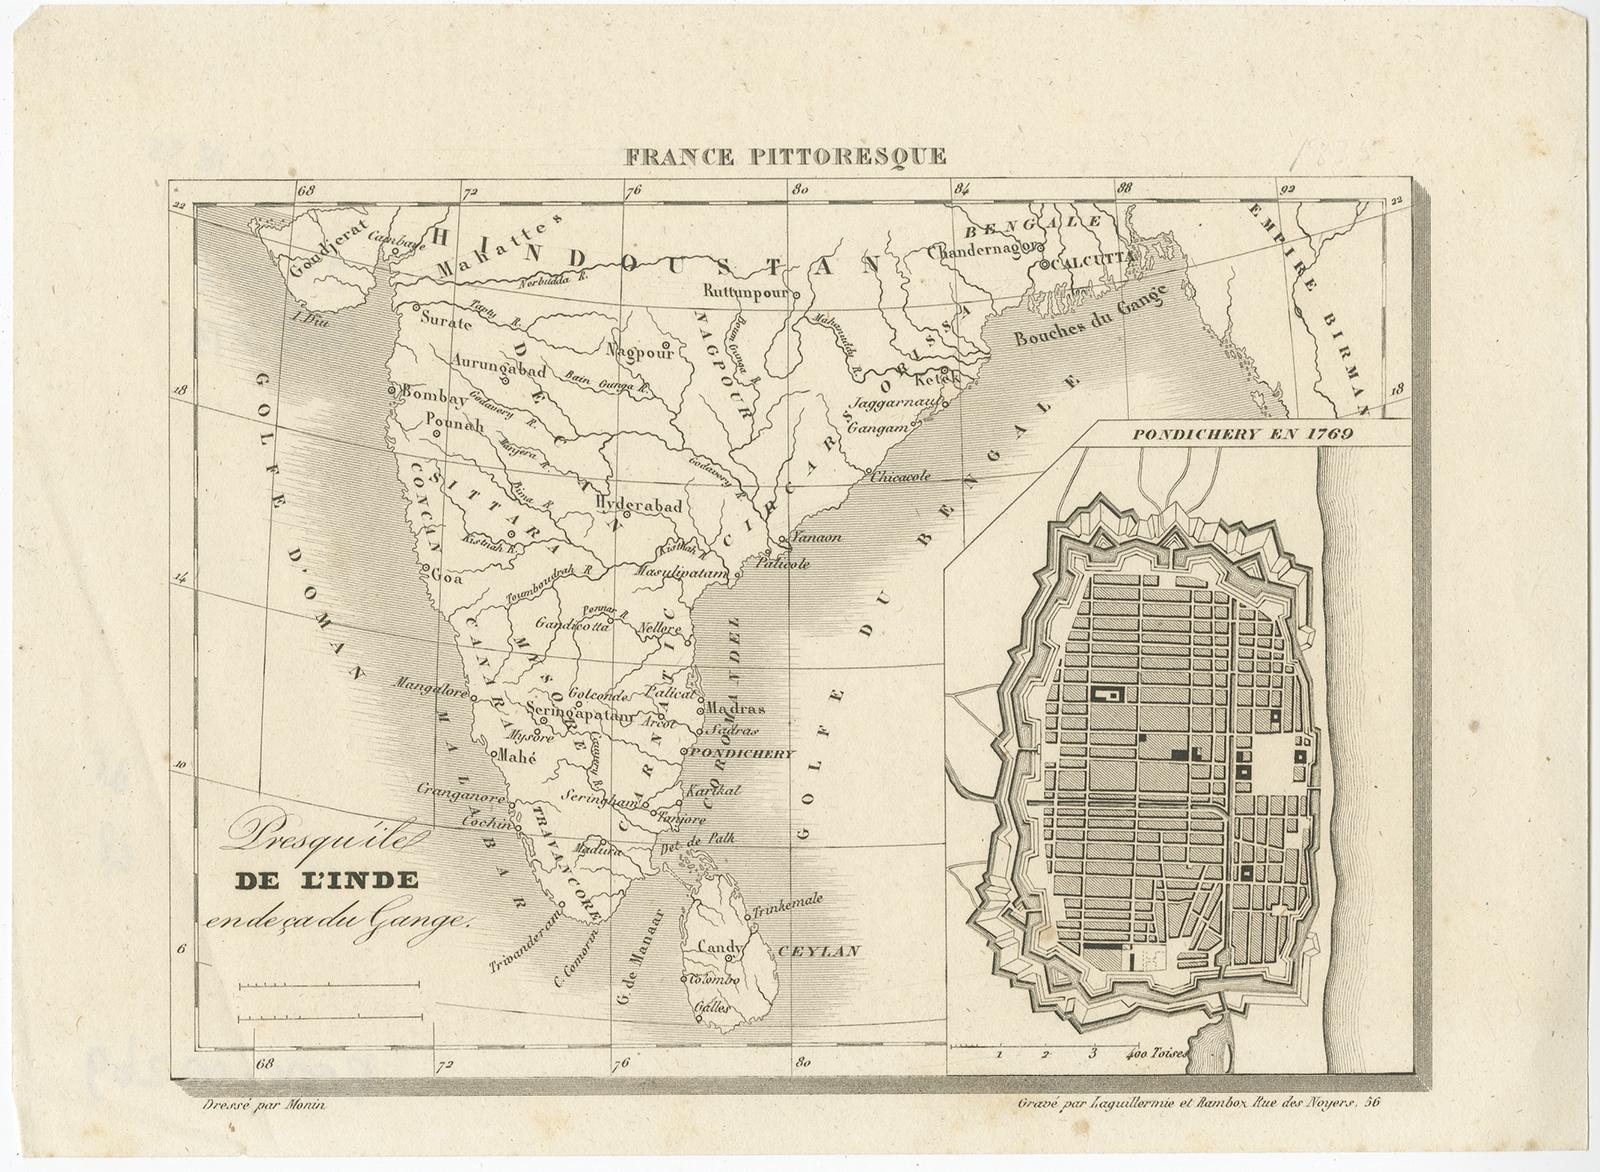 Antique map India titled 'Presqu'ile de l'Inde en de ca du Gange'. Miniature map depicting India with an inset map of Pondicherry (Puducherry). This map originates from 'France Pittoresque ou description Pittoresque (.)' published in Paris.